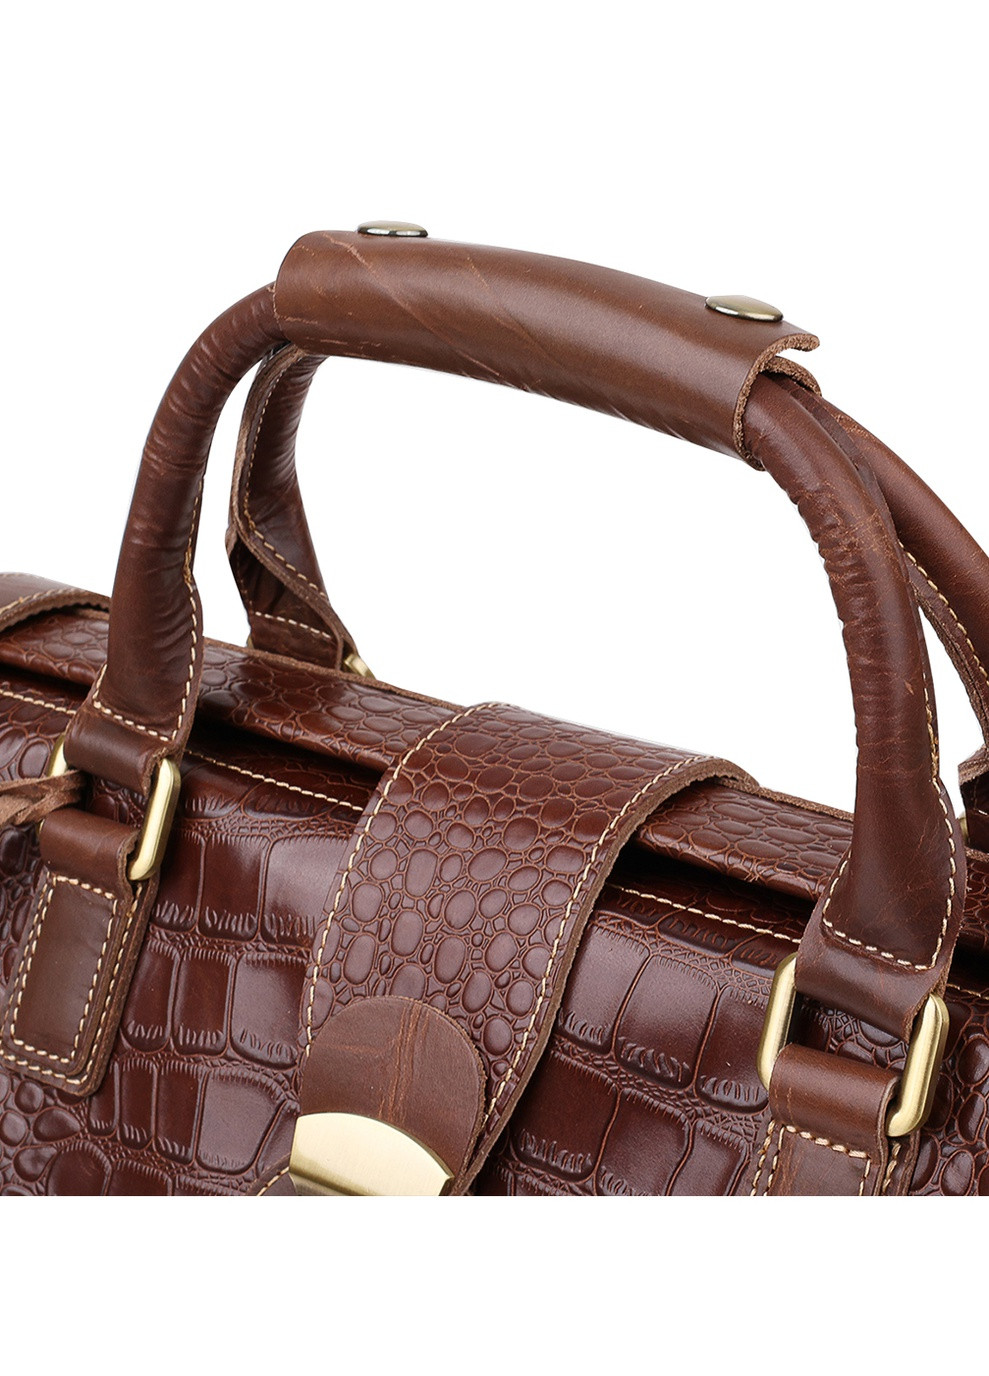 Дорожня шкіряна сумка 51х31х15 см Vintage (250096835)